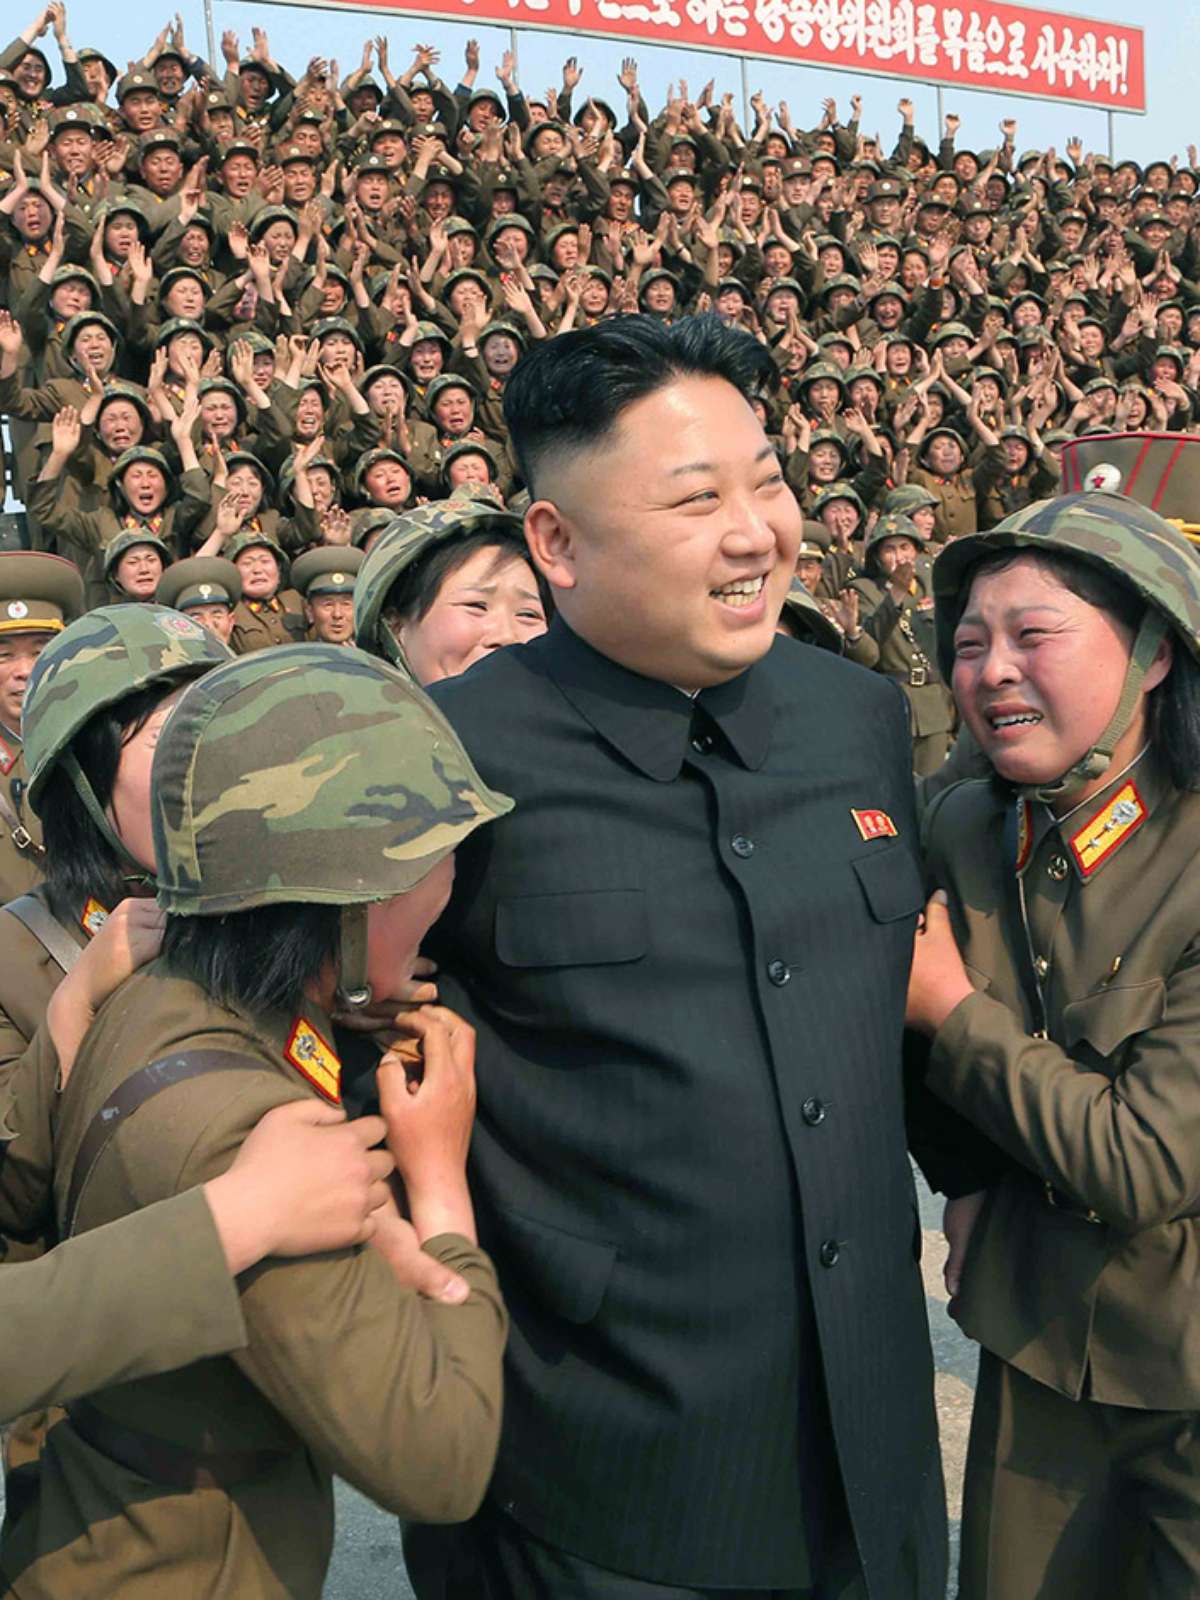 Tropa do Prazer: Kim Jong-un quer harém para sua “diversão”